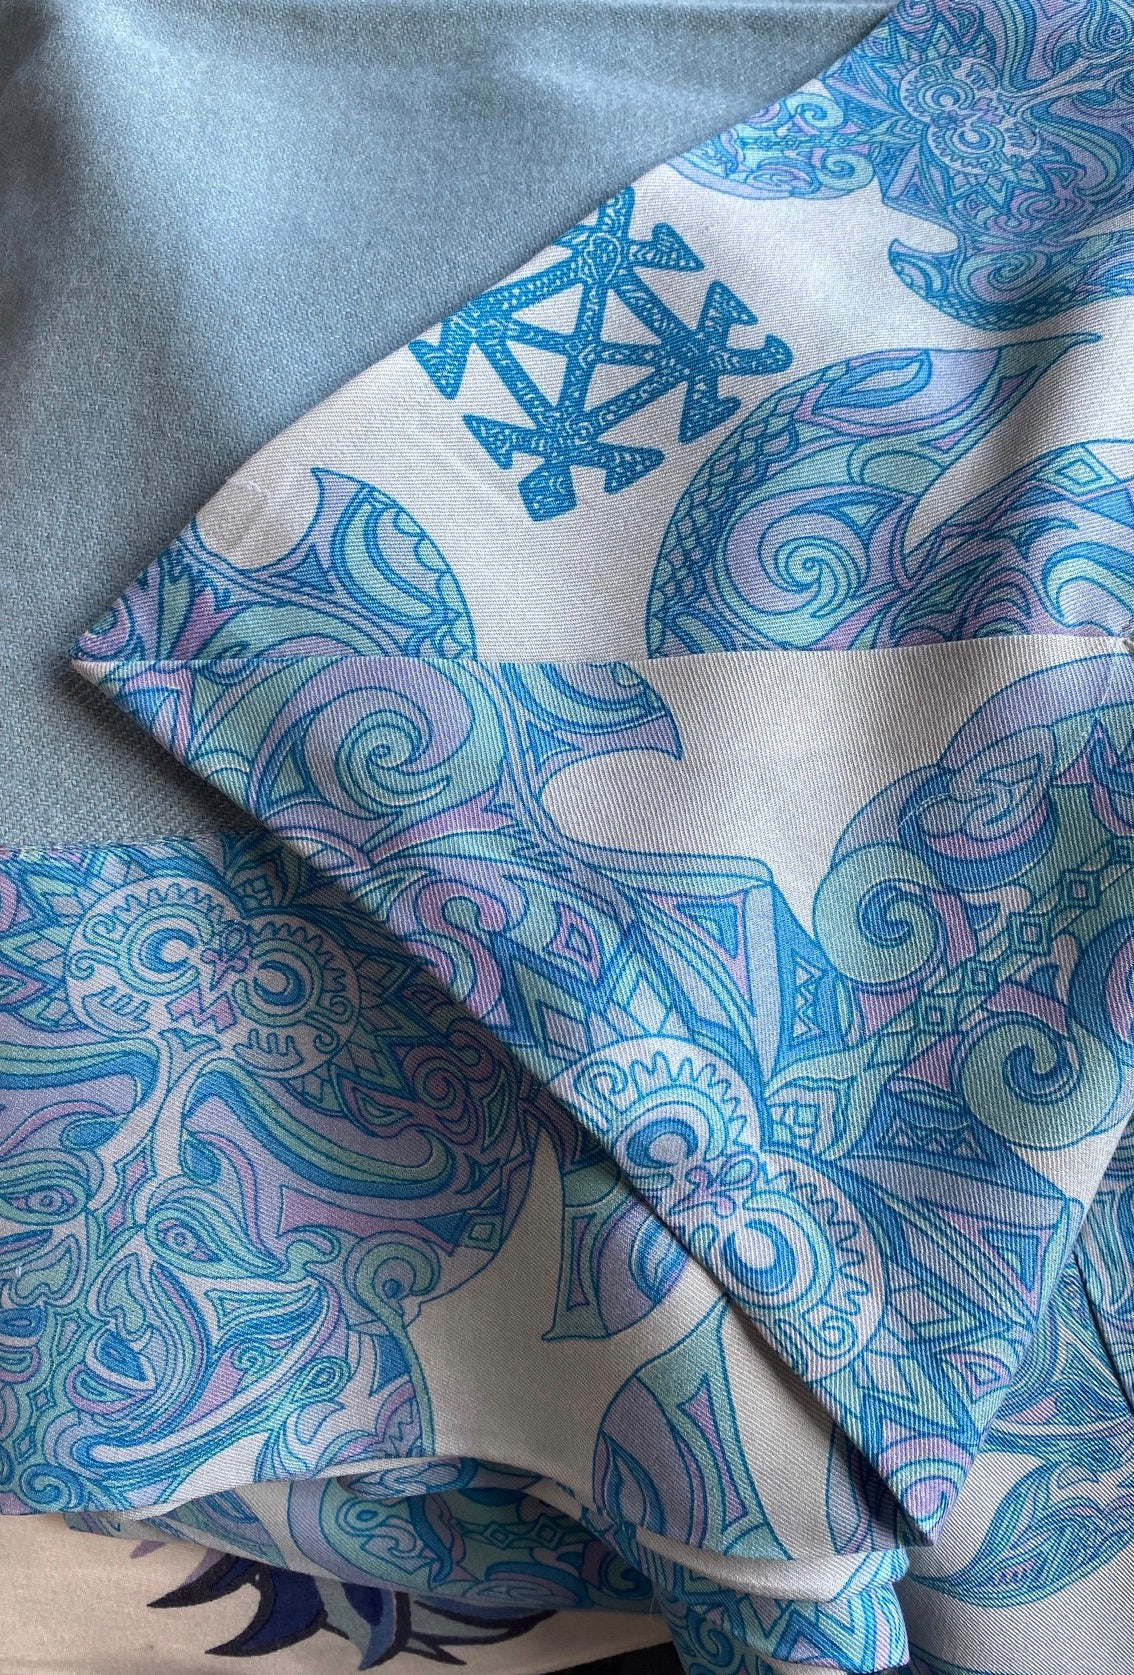 Plaid ESVARA TURTLES on silk, 100% Twill weave Kaschmir, blau